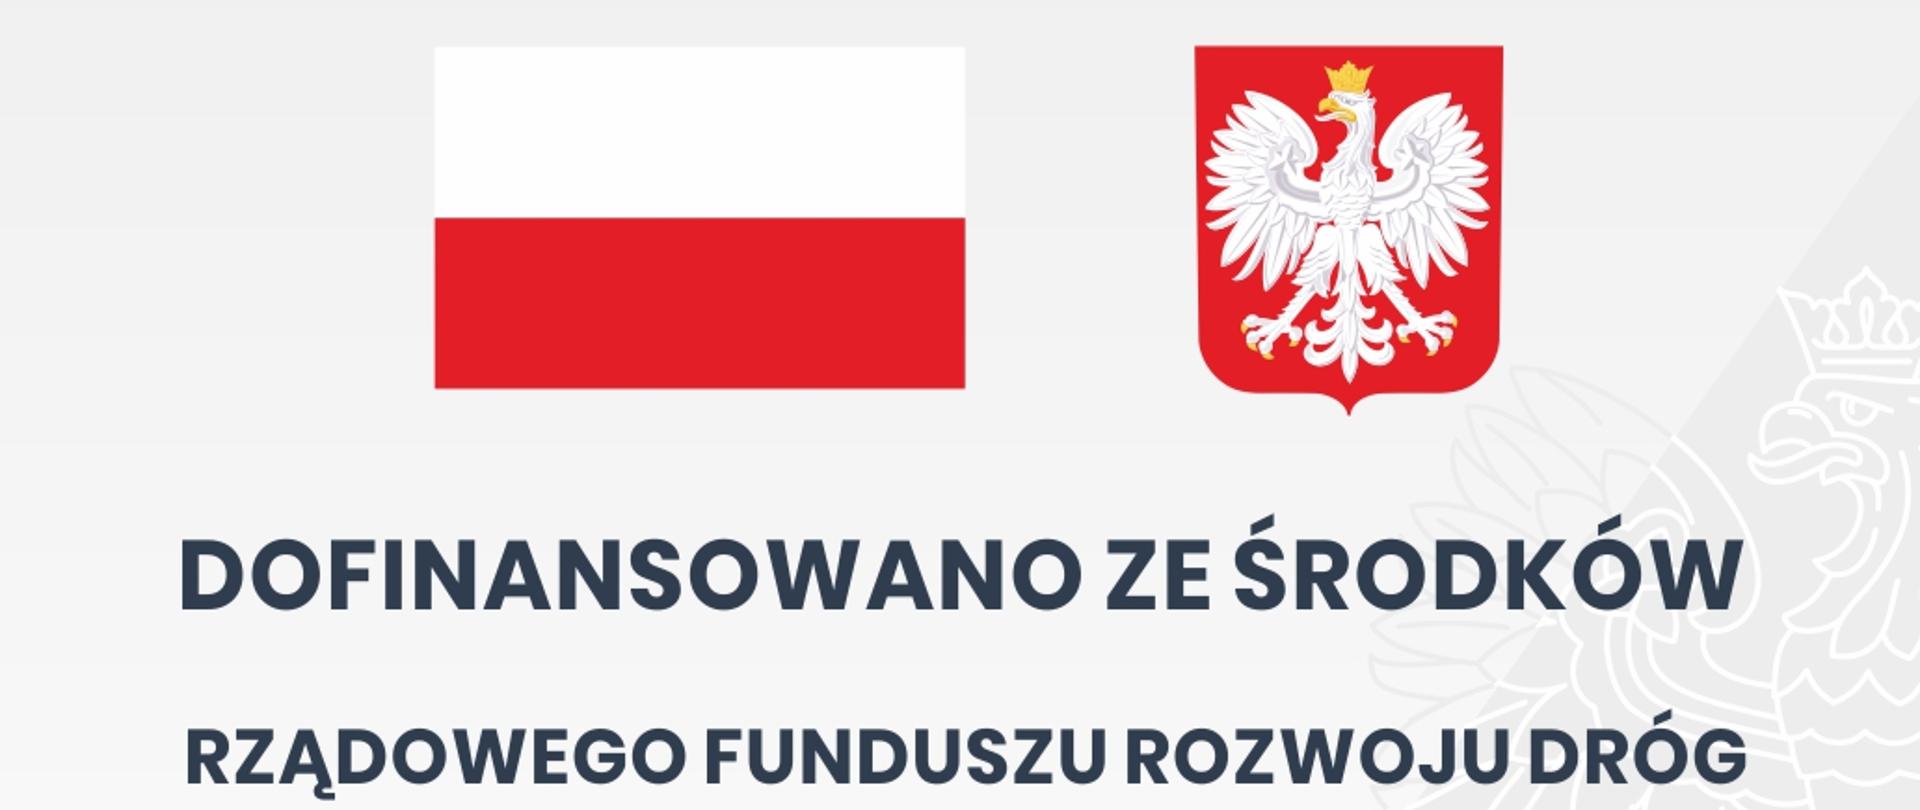 Tablica informacyjna inwestycji zrealizowanej dzięki dofinansowaniu ze środków Rządowego Funduszu Rozwoju Dróg - nazwa zadania, kwota dofinansowania, wartość inwestycji, flaga i godło Polski